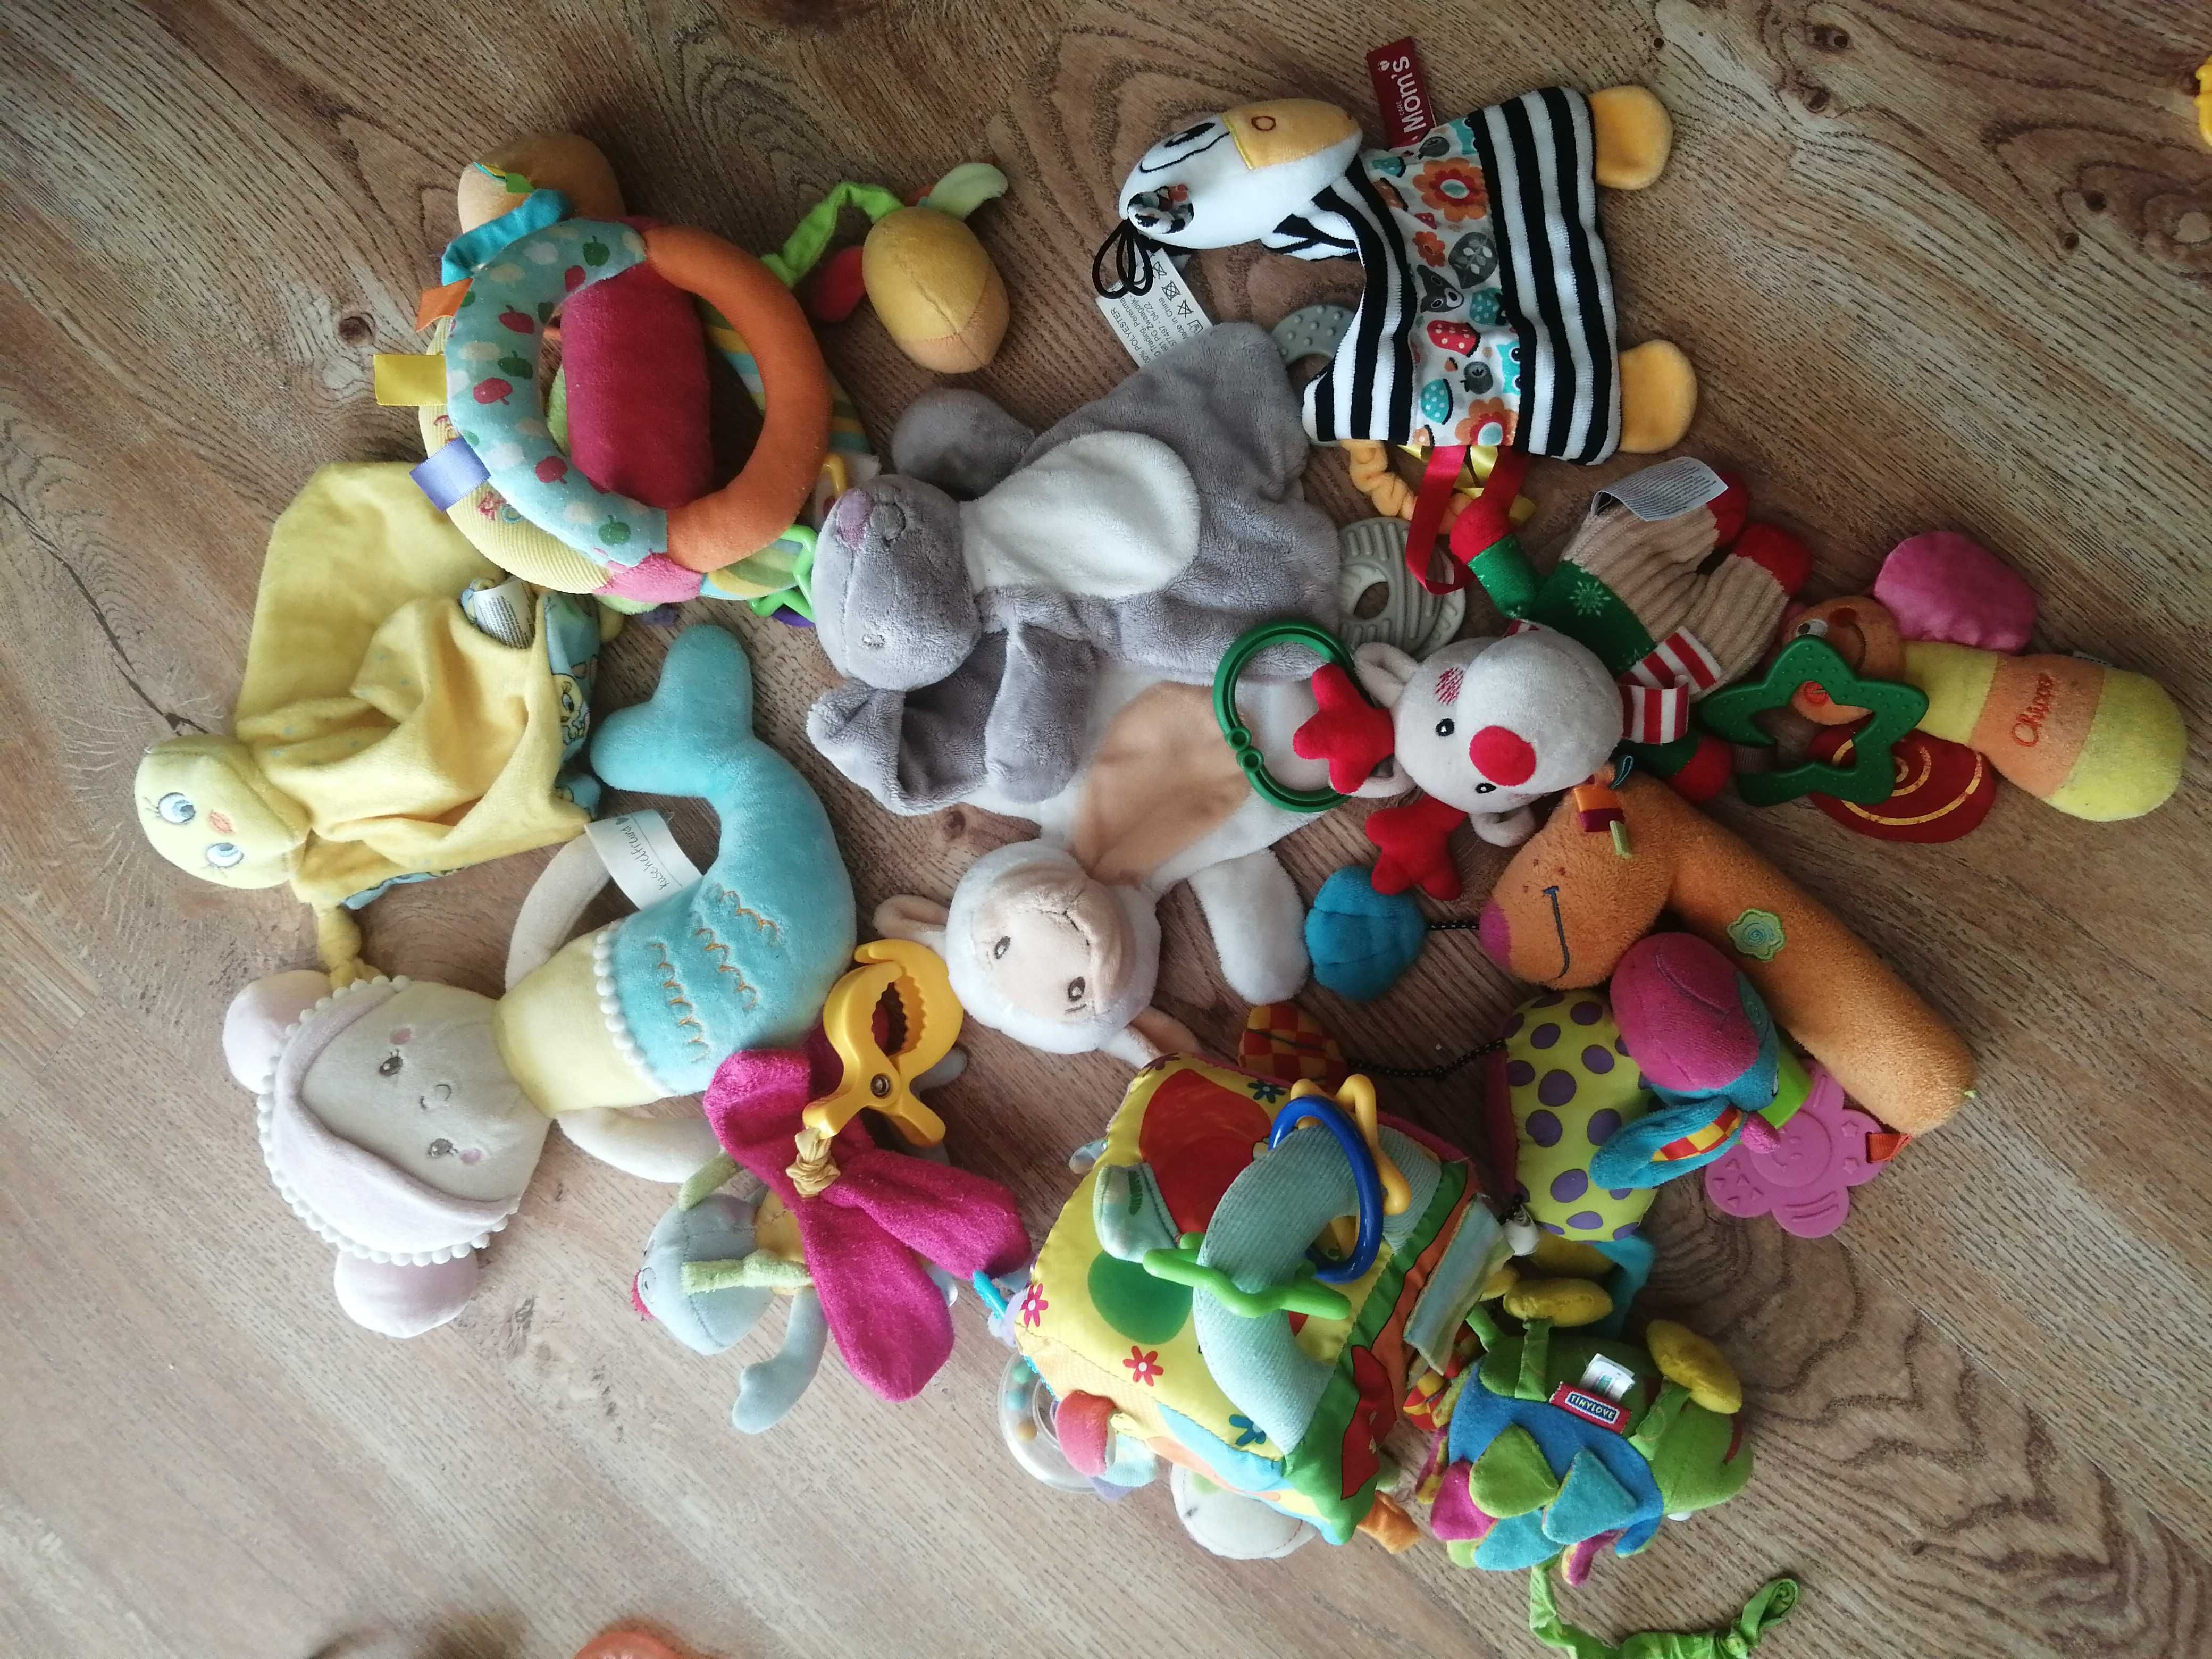 Zabawki dla niemowlaka ok. 30 sztuk: książeczki, grzechotki itp.